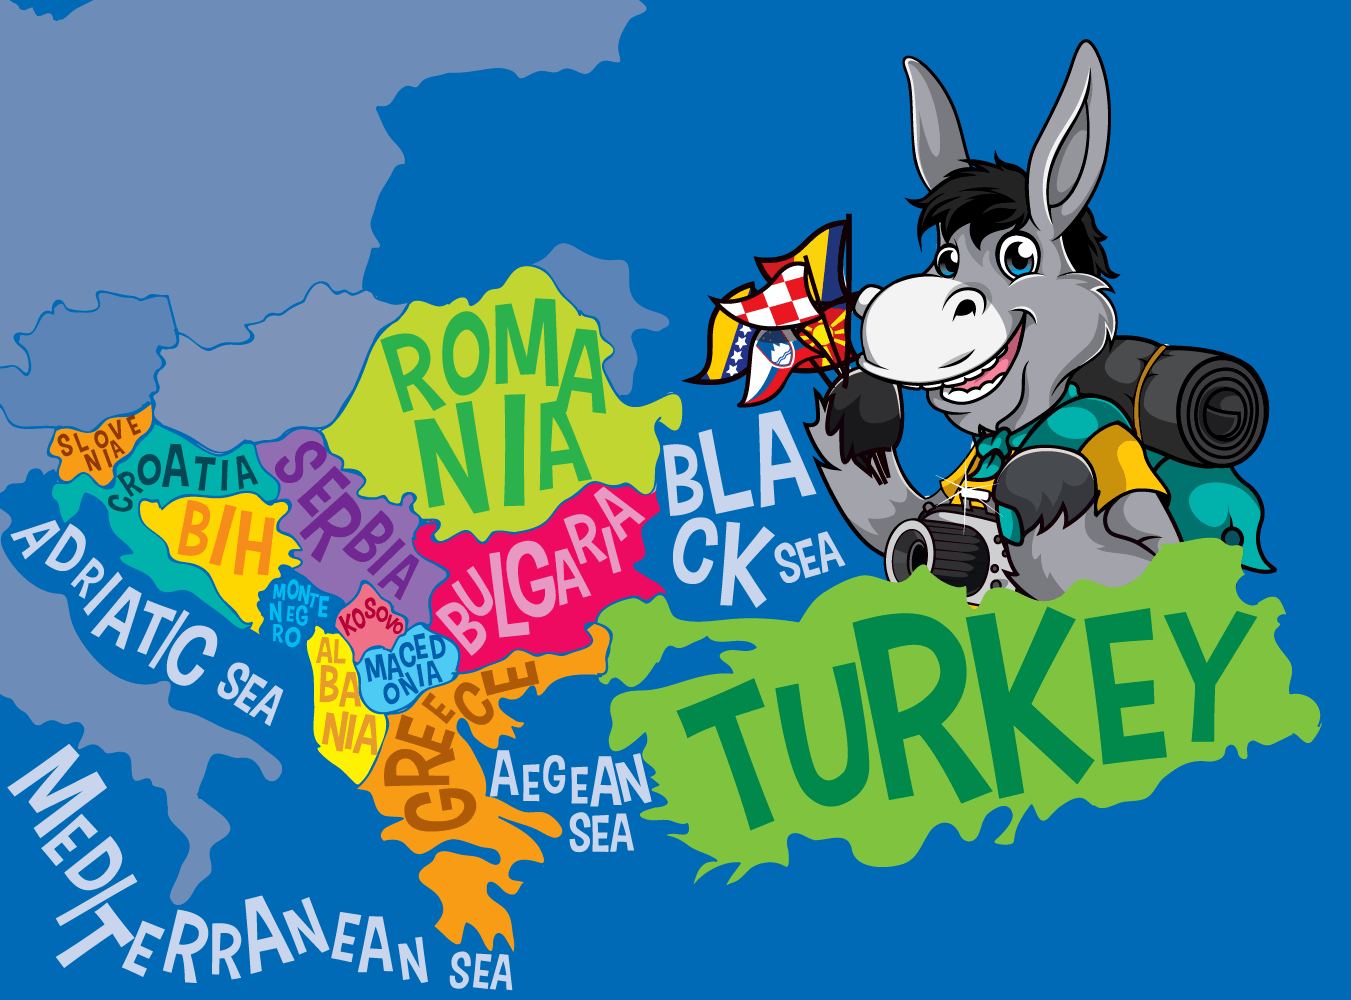 Balkans Map Of The Balkans_Blue